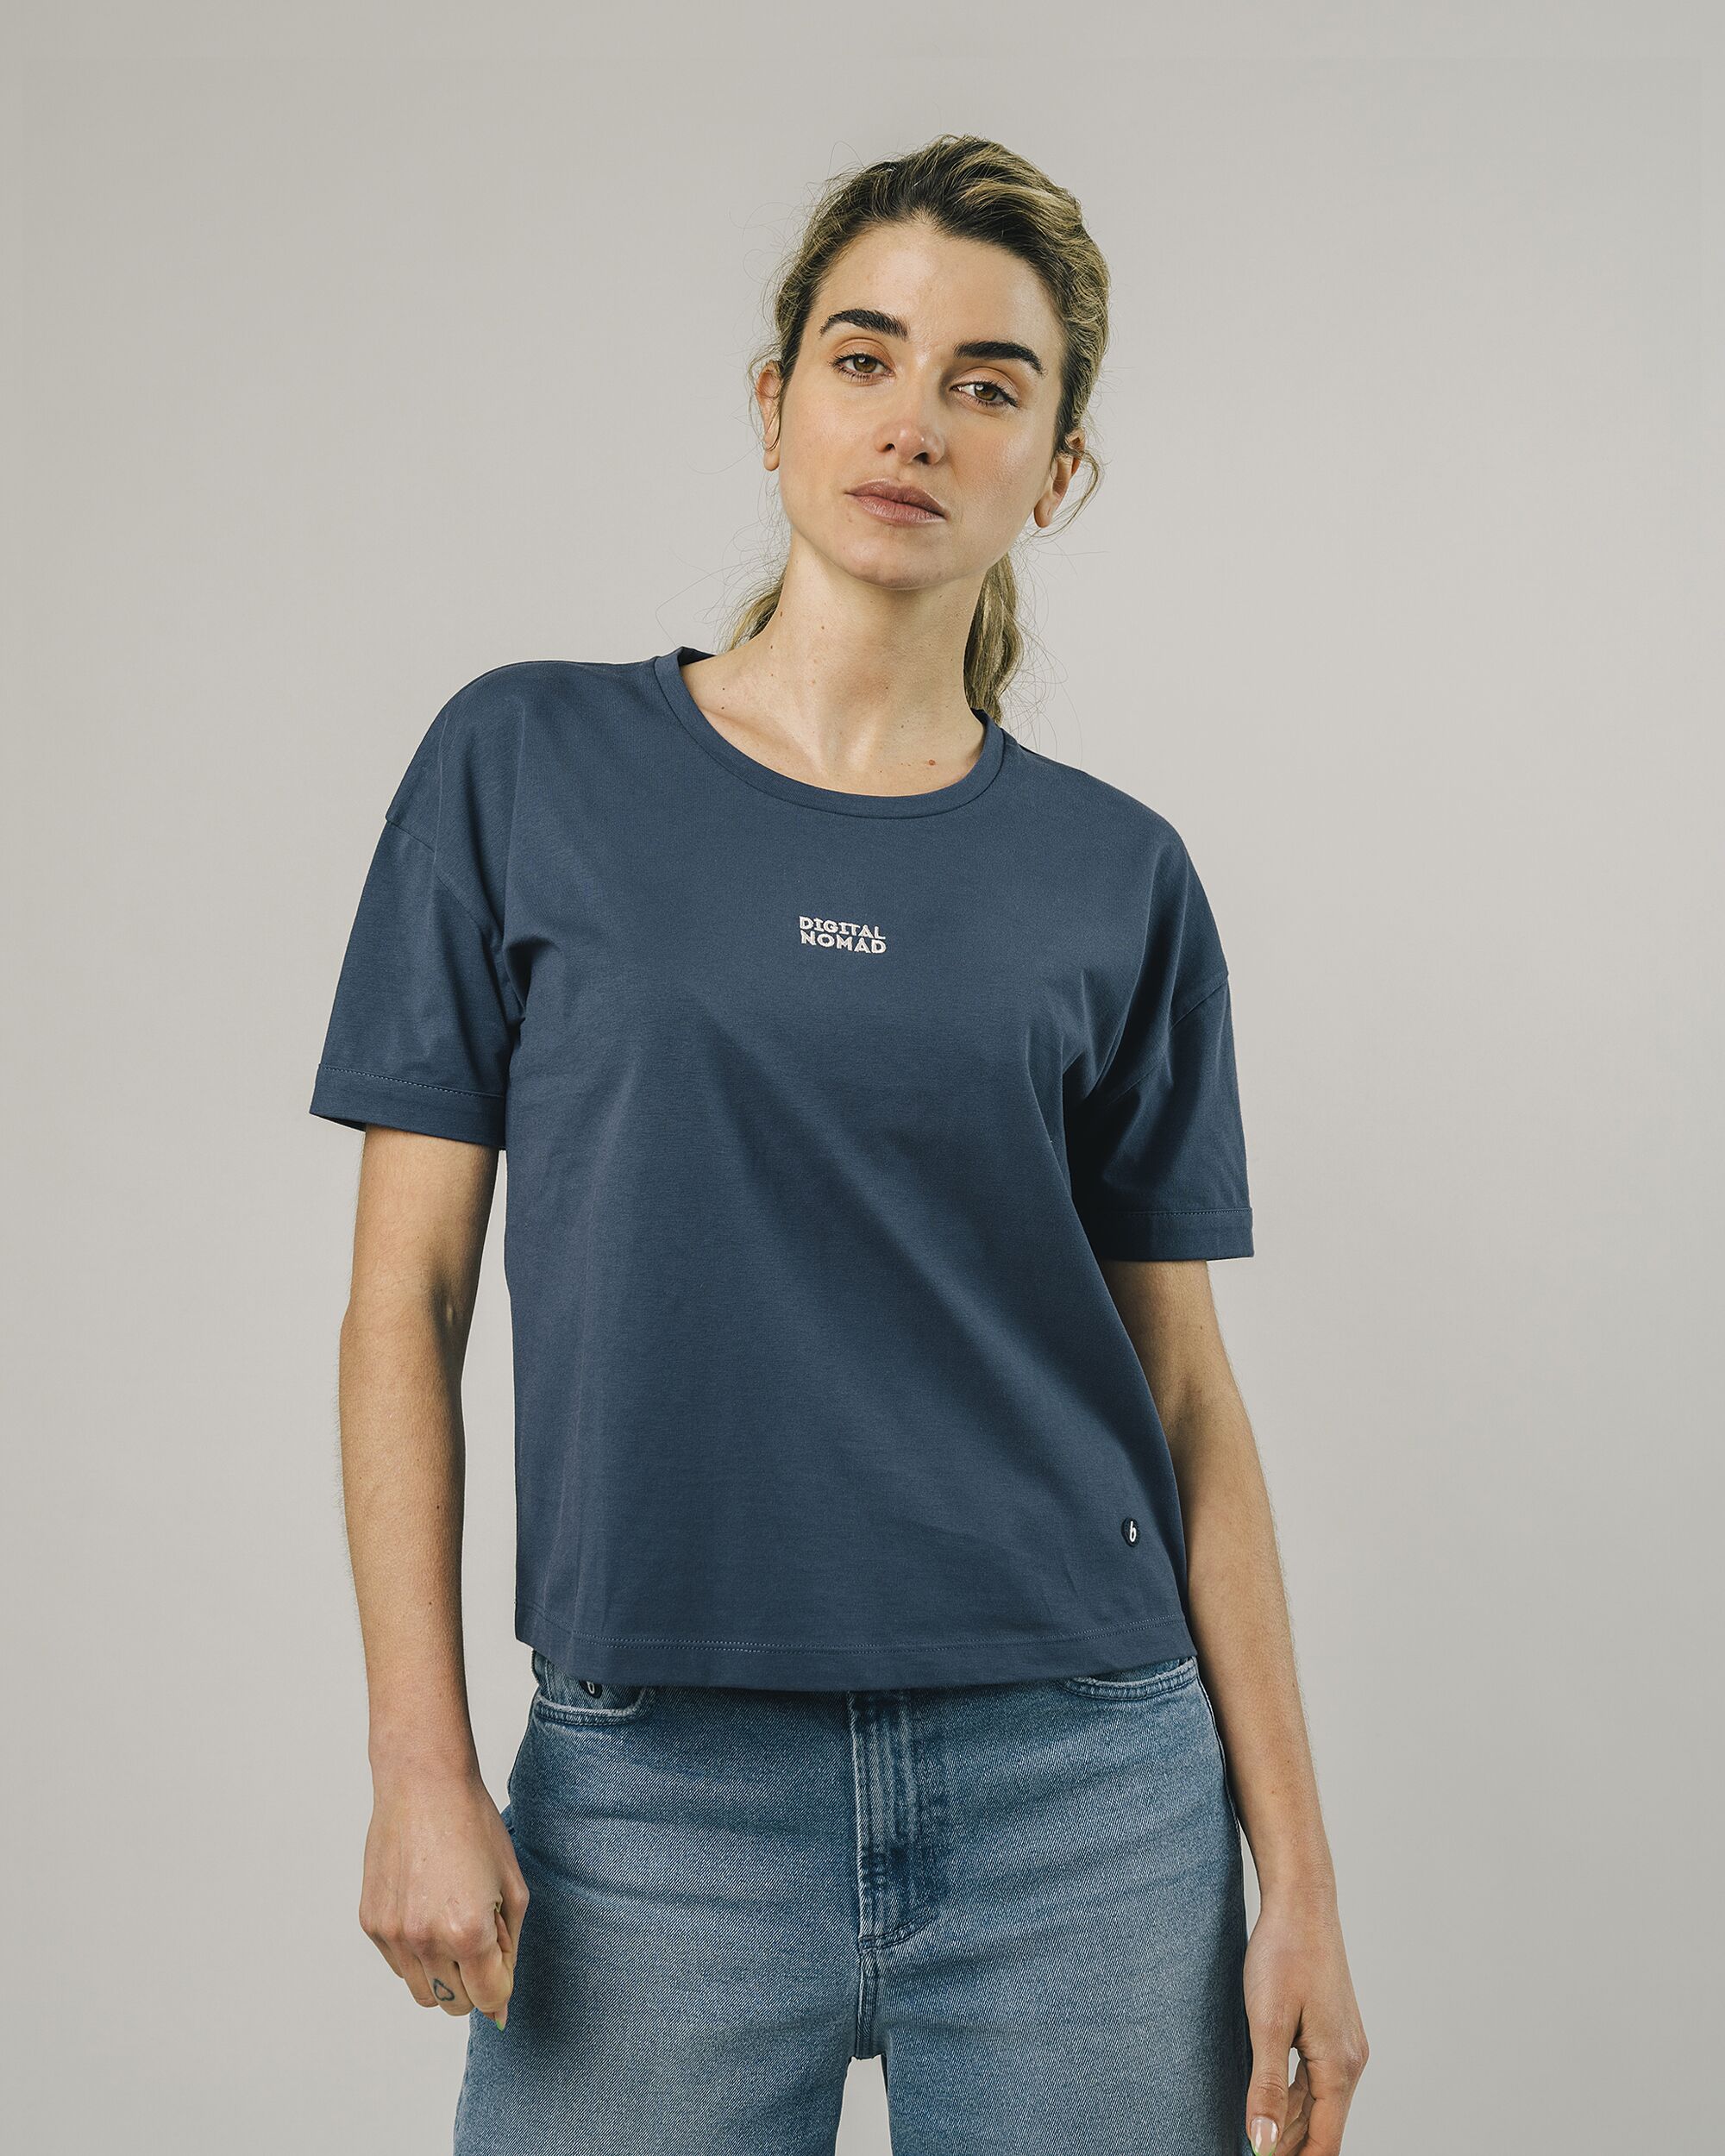 Women's Organic Cotton T-Shirts